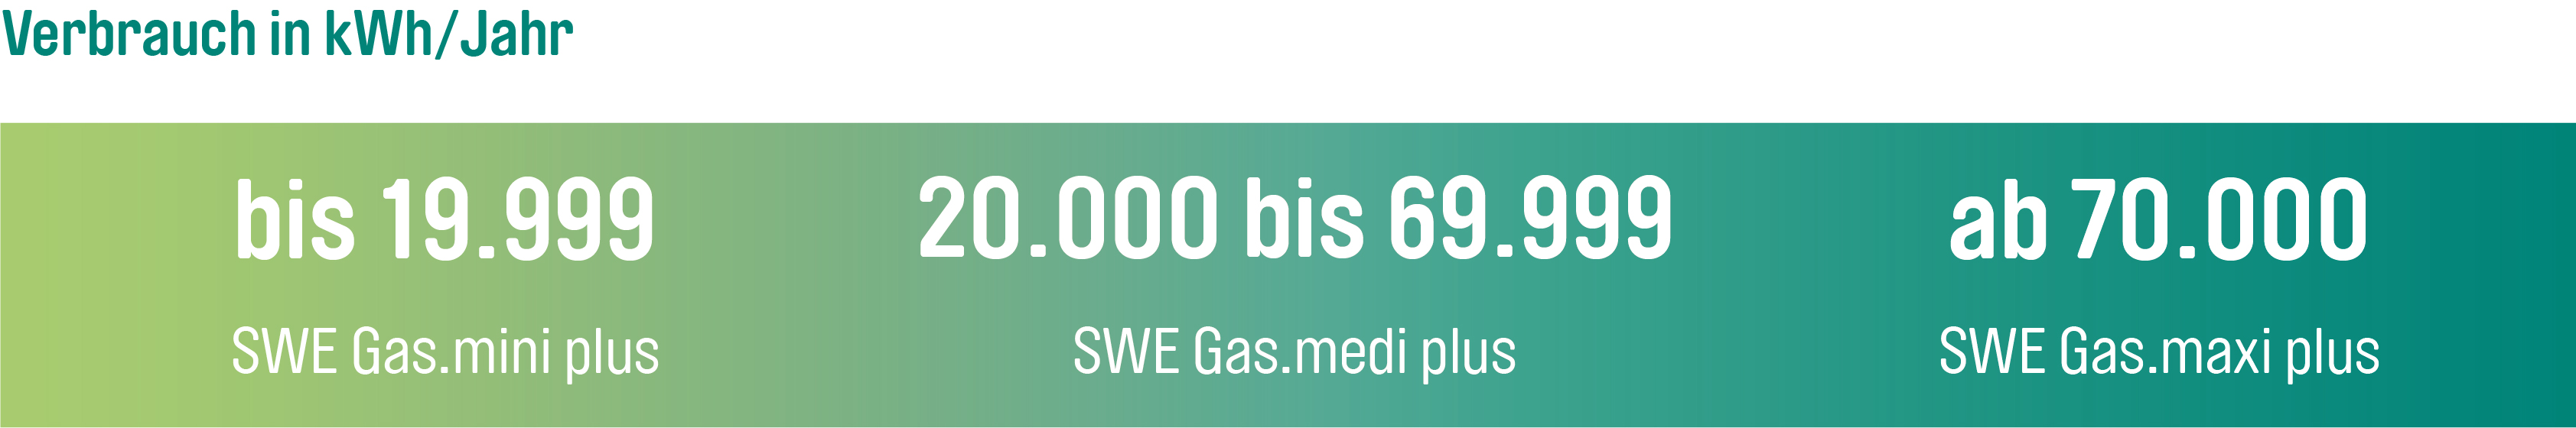 Bis 19.999 kWh erhält man den Tarif SWE Gas.mini, von 20.000 bis 69.999 kWh Gas.medi und ab 70.000 kWh den Tarif SWE Gas.maxi.